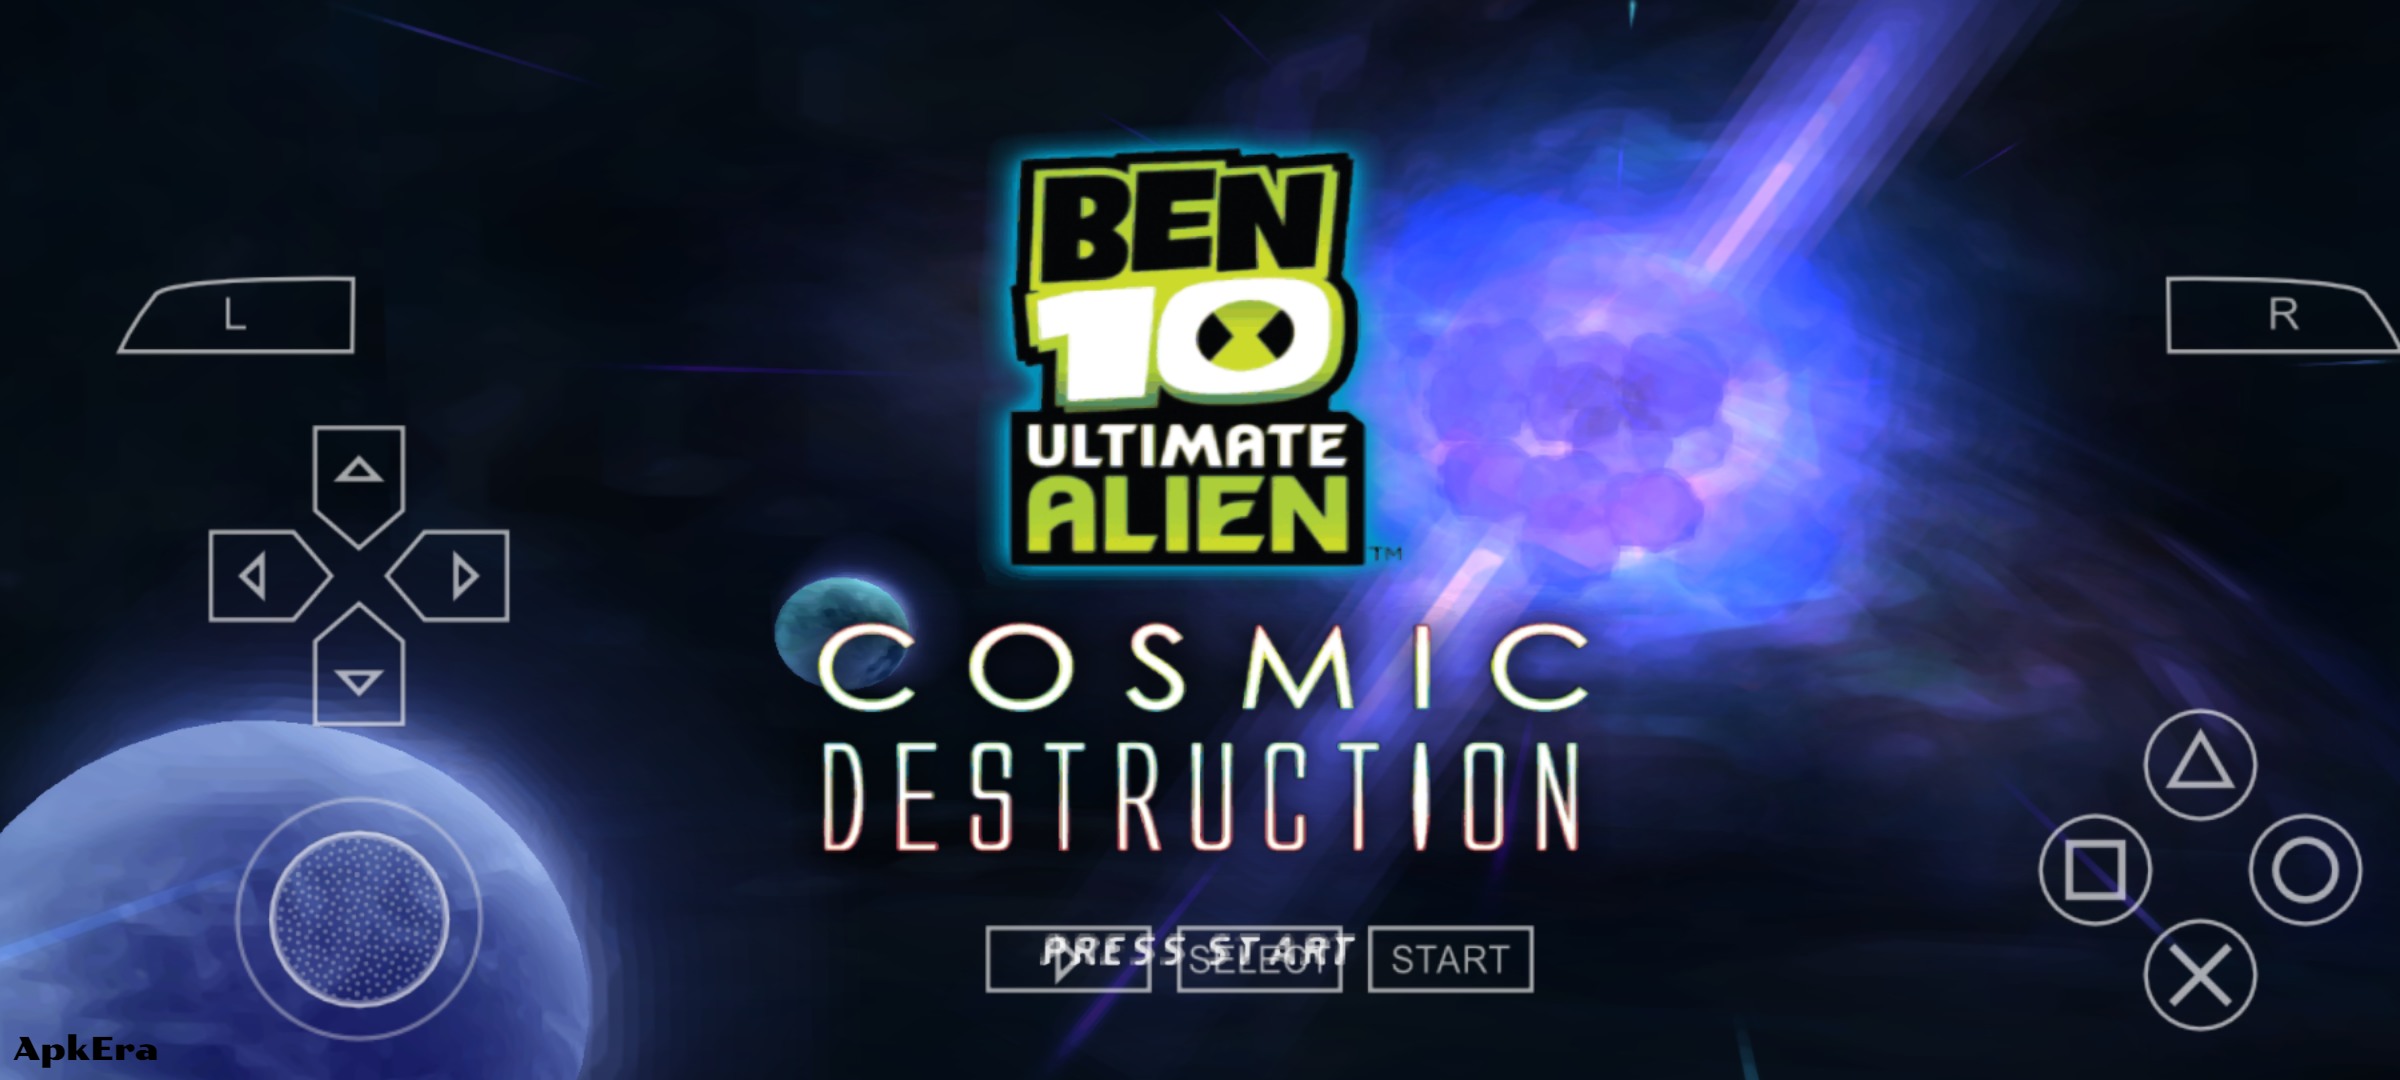 Ben 10 Ultimate Alien: Cosmic Destruction PPSSPP Download